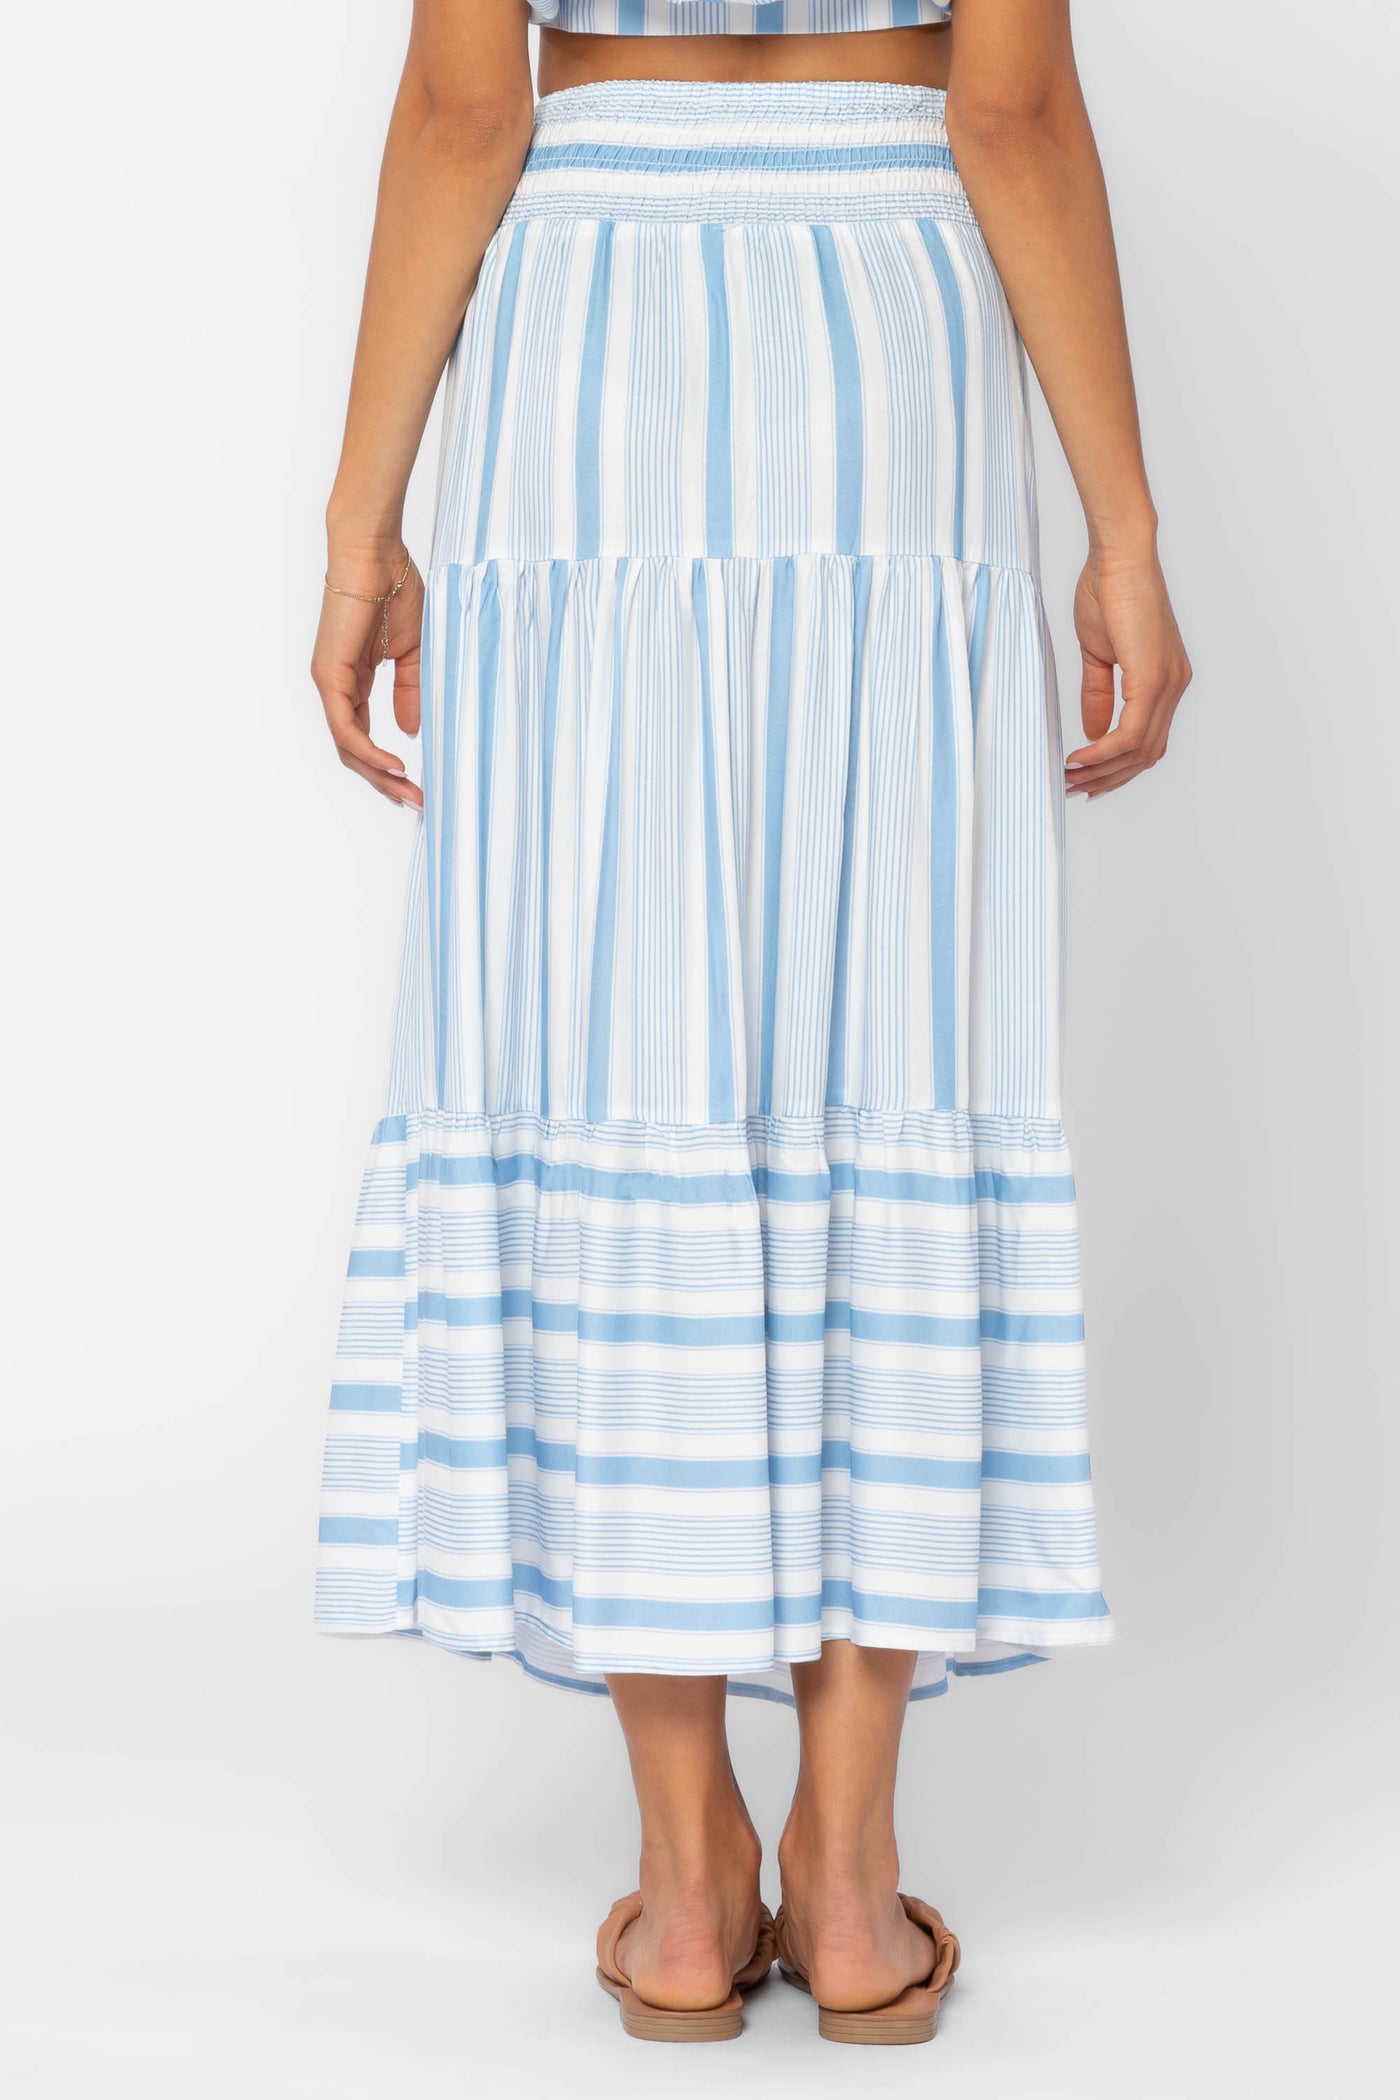 Irene Blue Stripe Skirt - Bottoms - Velvet Heart Clothing